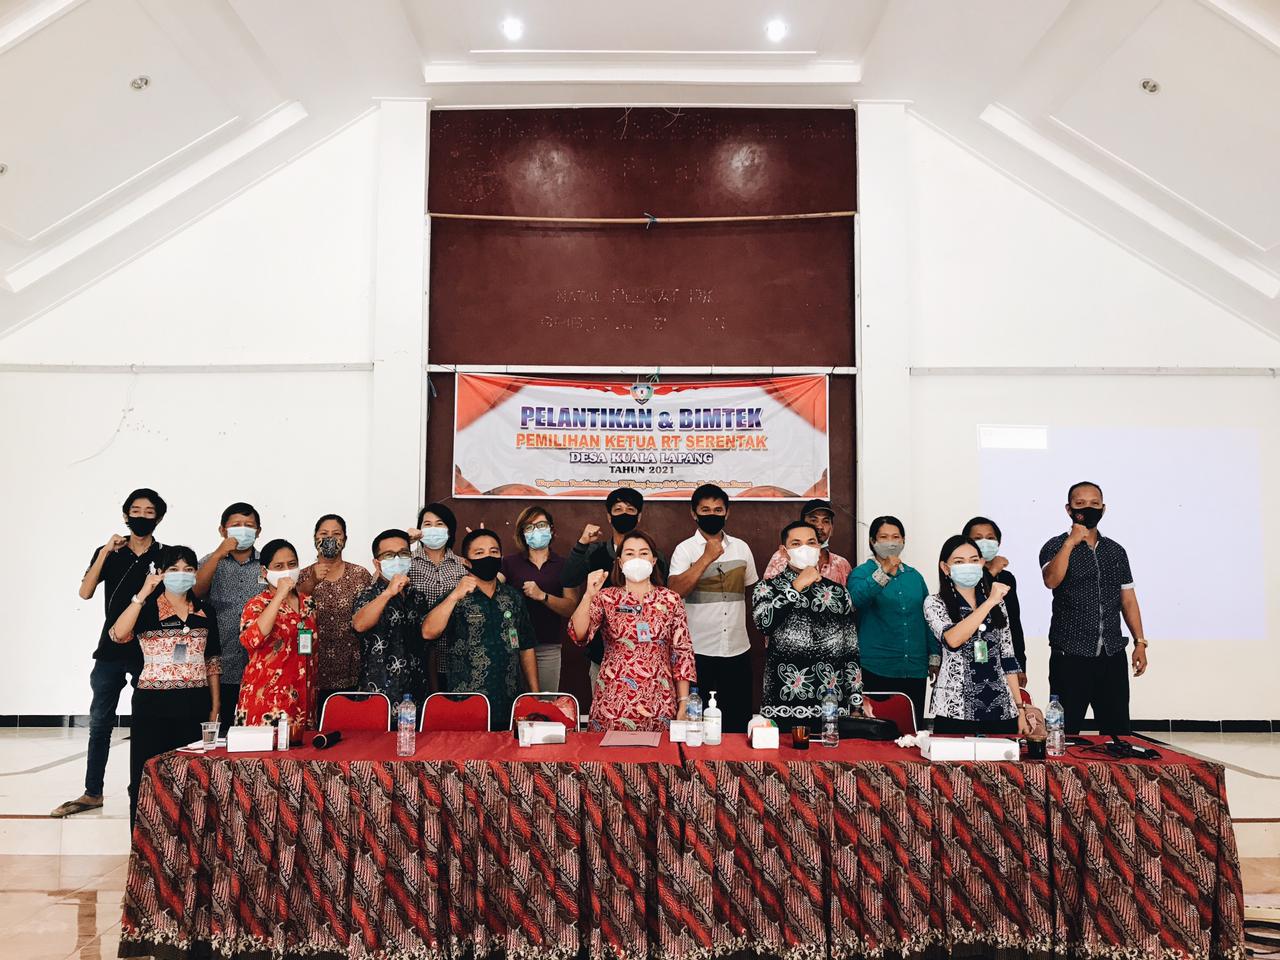 Pernah Jadi yang Pertama di Indonesia pada 2016, Sejumlah Desa di Kabupaten Malinau Kembali Gelar Pemilihan Ketua RT Serentak